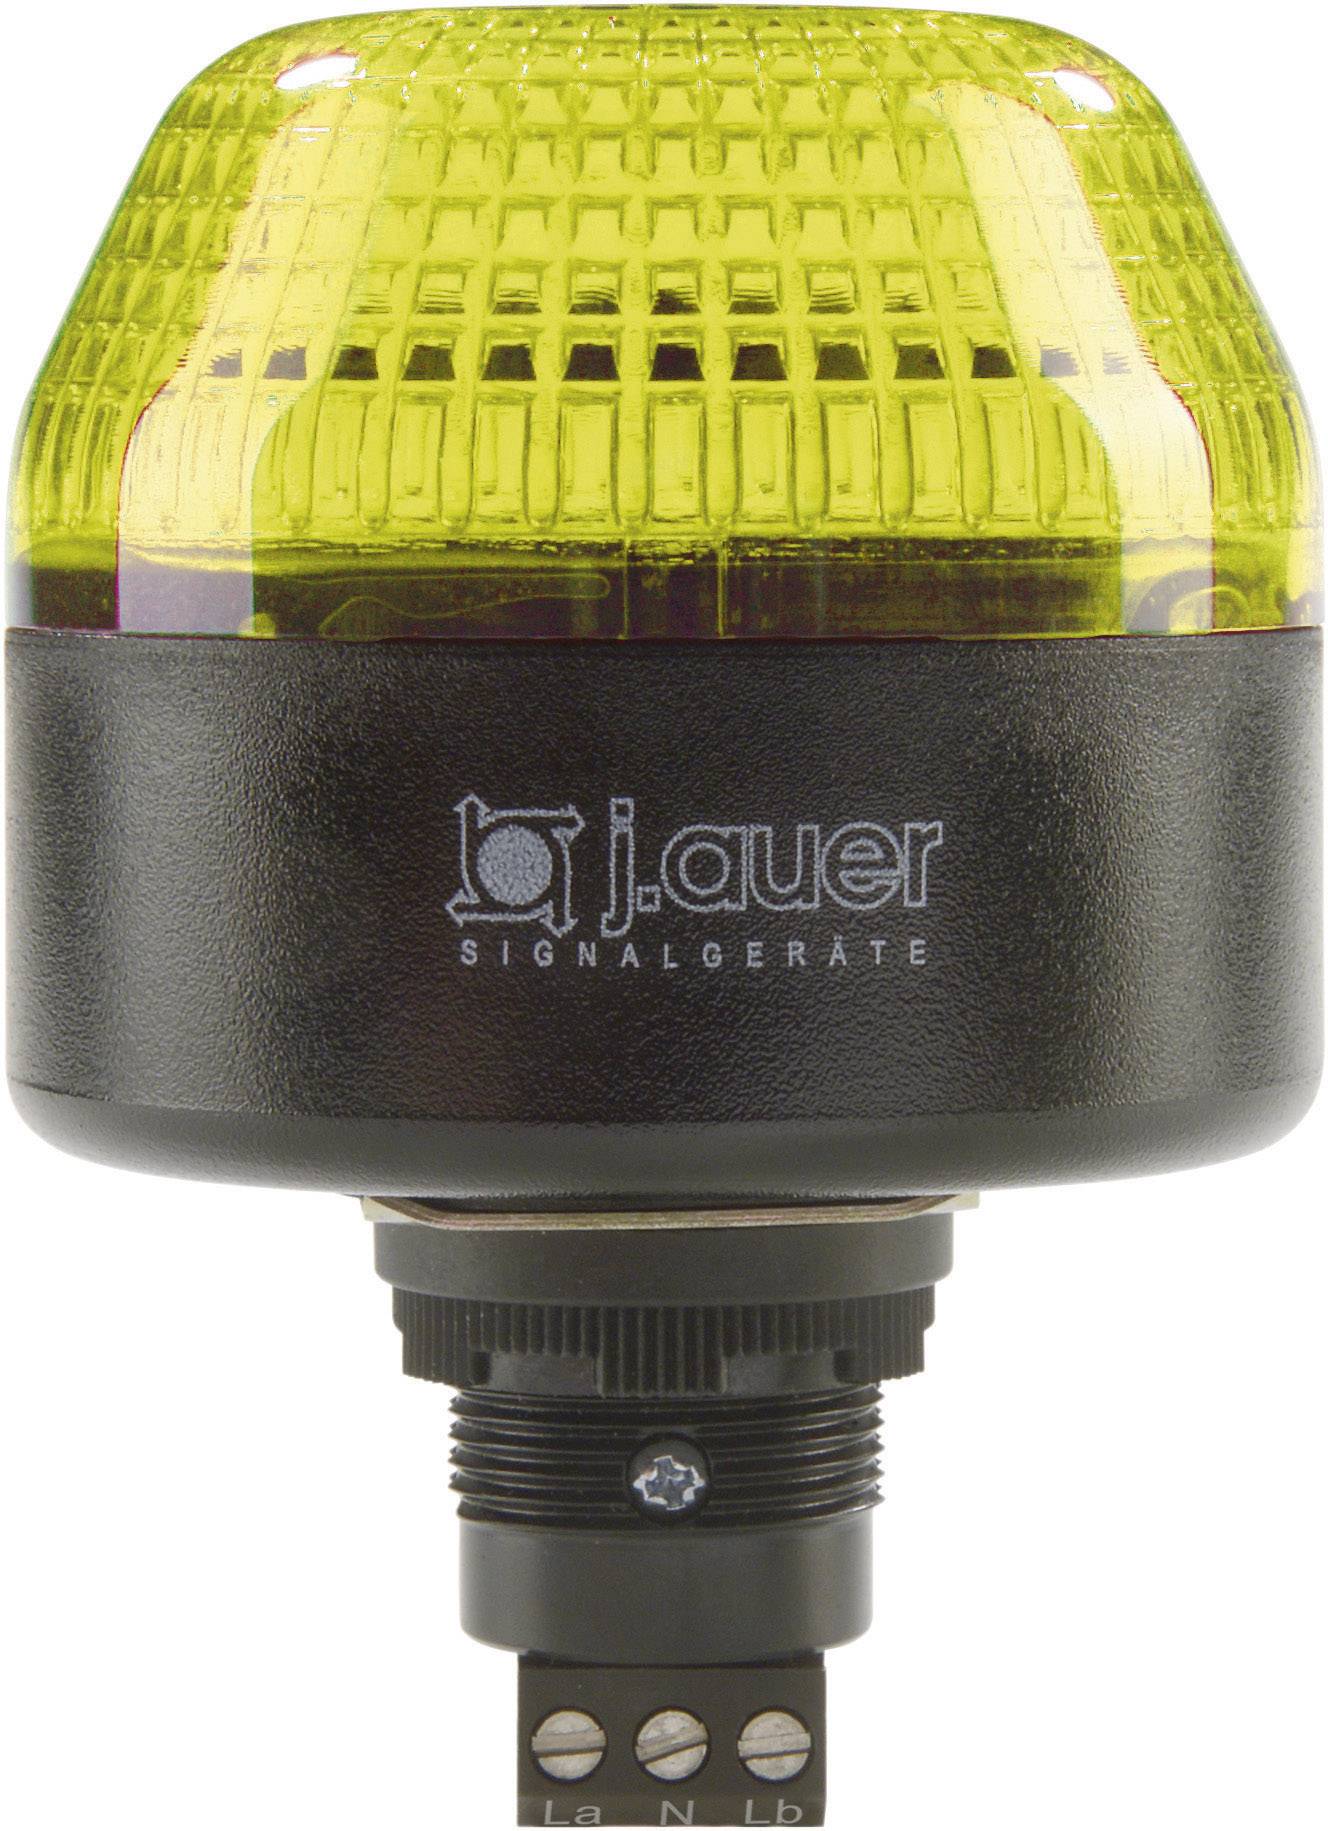 AUER SIGNAL Signalleuchte LED Auer Signalgeräte IBL Gelb Dauerlicht, Blinklicht 230 V/AC